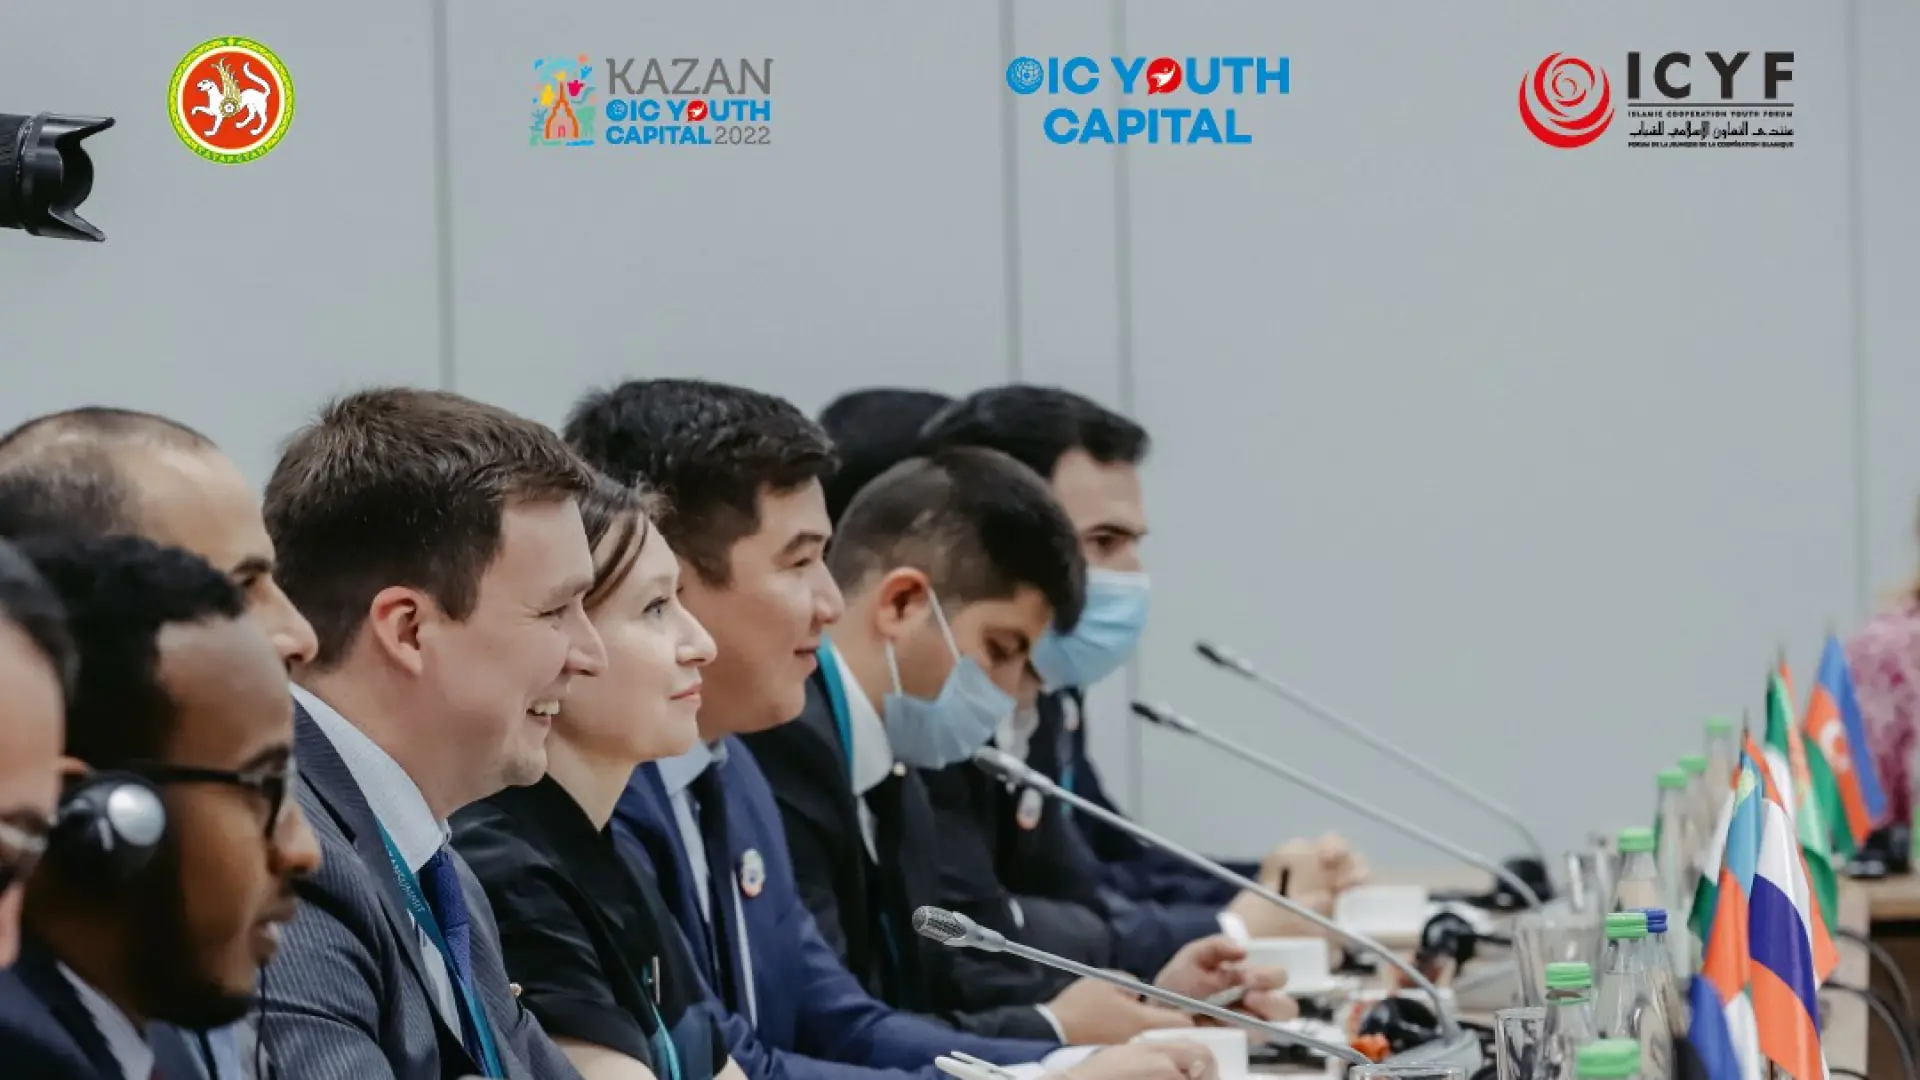 Yetakchilik qobiliyatiga ega yoshlar uchun Qozon shahrida toʻliq moliyalashtiriladigan 4 kunlik Kazan Global Youth Summit dasturi